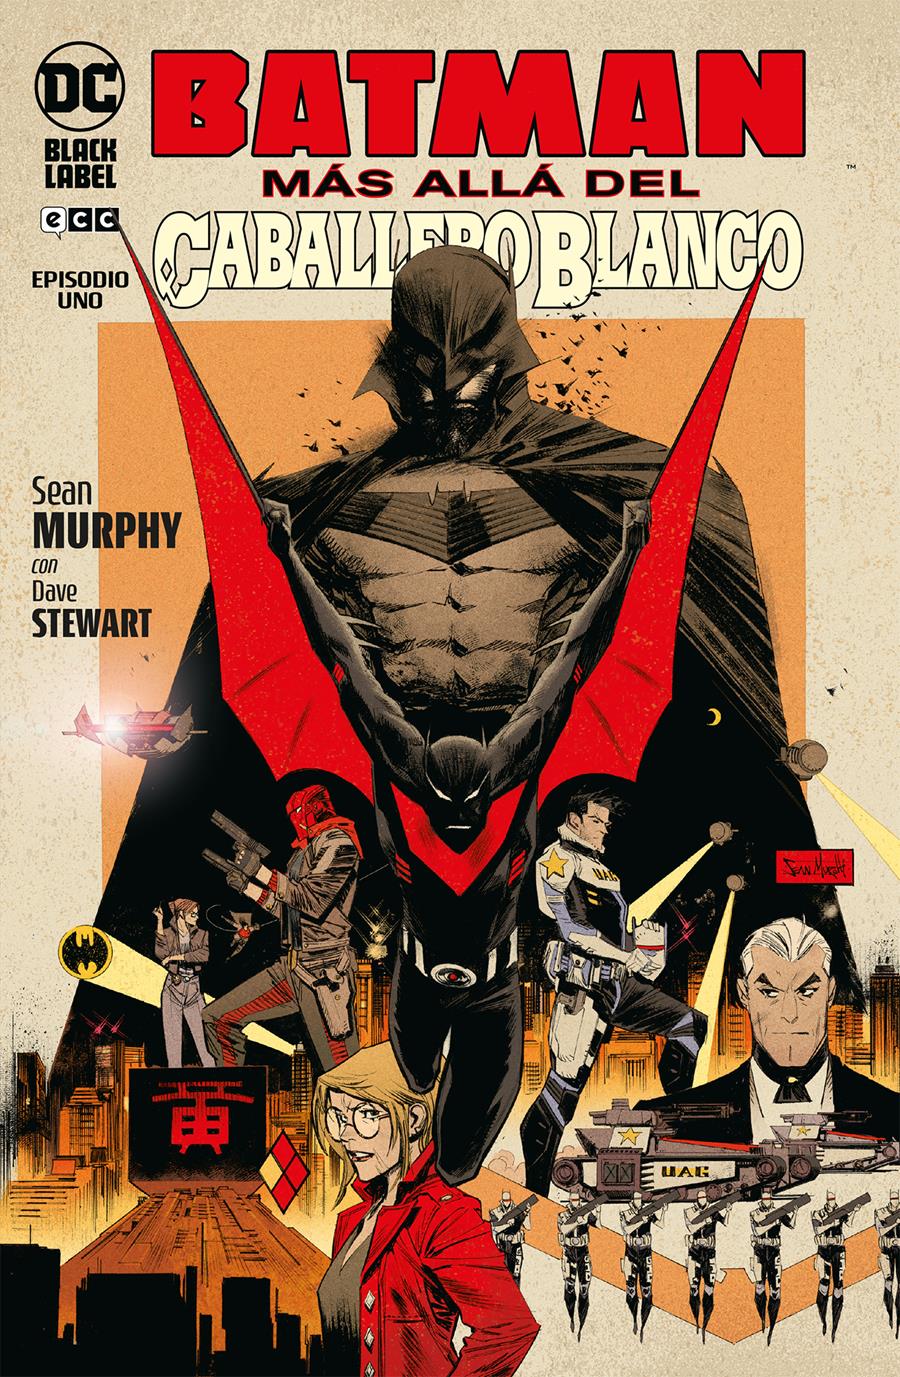 Batman: Más allá del Caballero Blanco núm. 1 de 8 | N0722-ECC35 | Sean Murphy / Sean Murphy | Terra de Còmic - Tu tienda de cómics online especializada en cómics, manga y merchandising